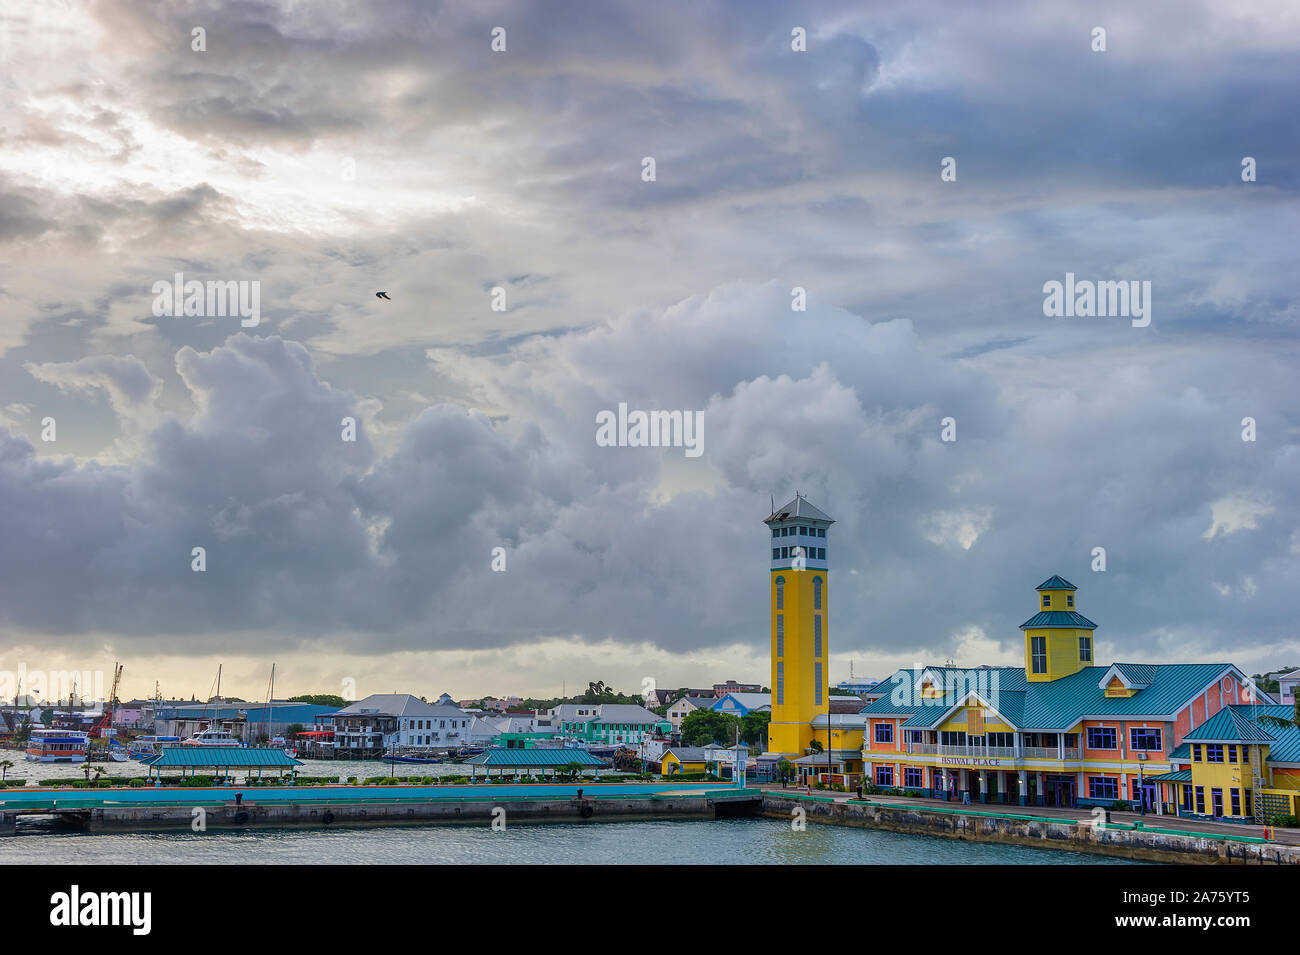 Nassau, Bahamas - septembre 21,2019:Terminal à Prince George Wharf, également connu sous le nom de Festival Place,à Nassau Harbour vu d'un navire de croisière. Banque D'Images